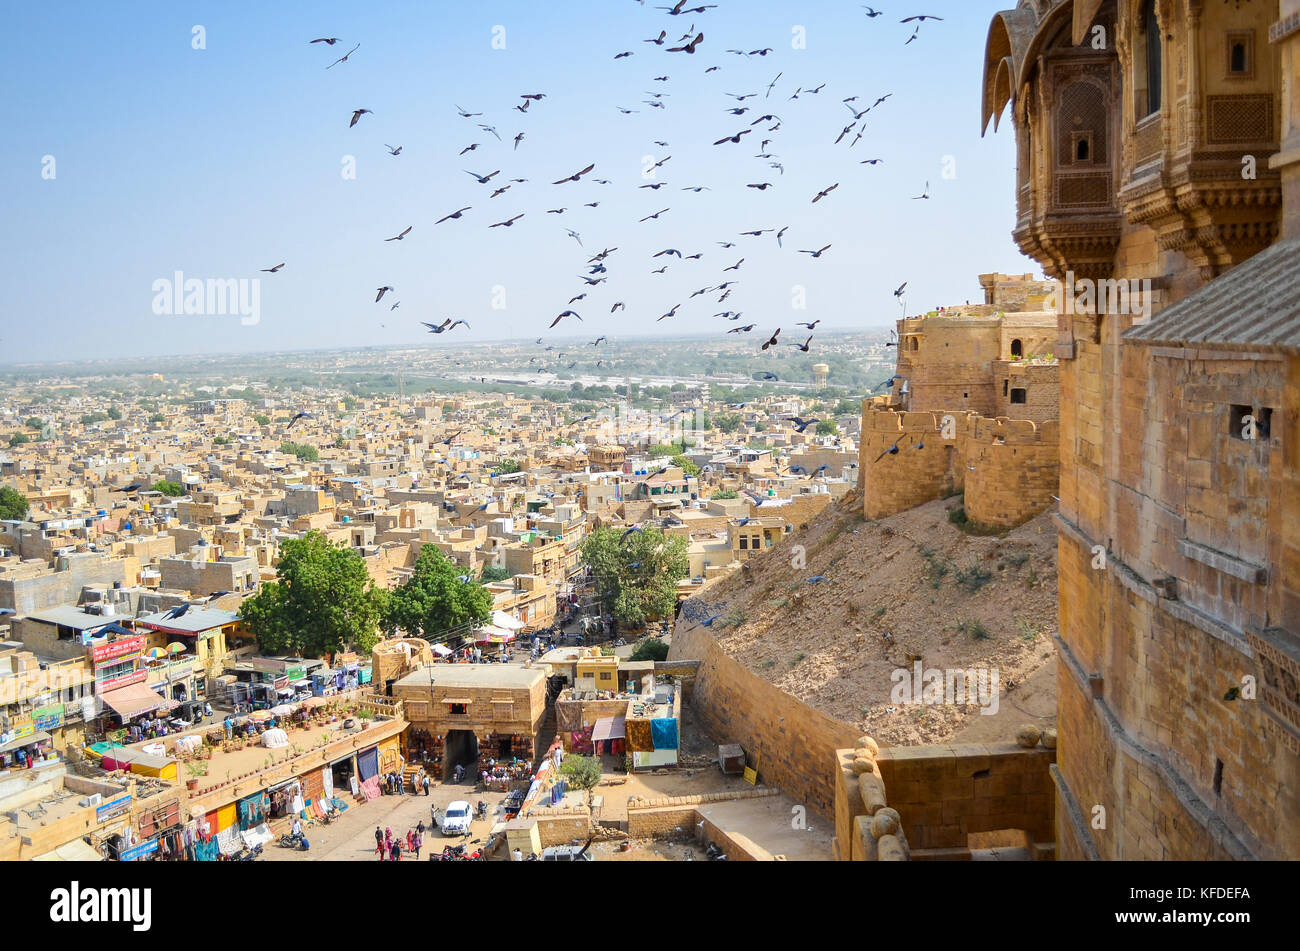 Vista della città di Jaisalmer dalla storica hilltop fort con grandi uccelli in aria al di sopra del mercato. Foto Stock